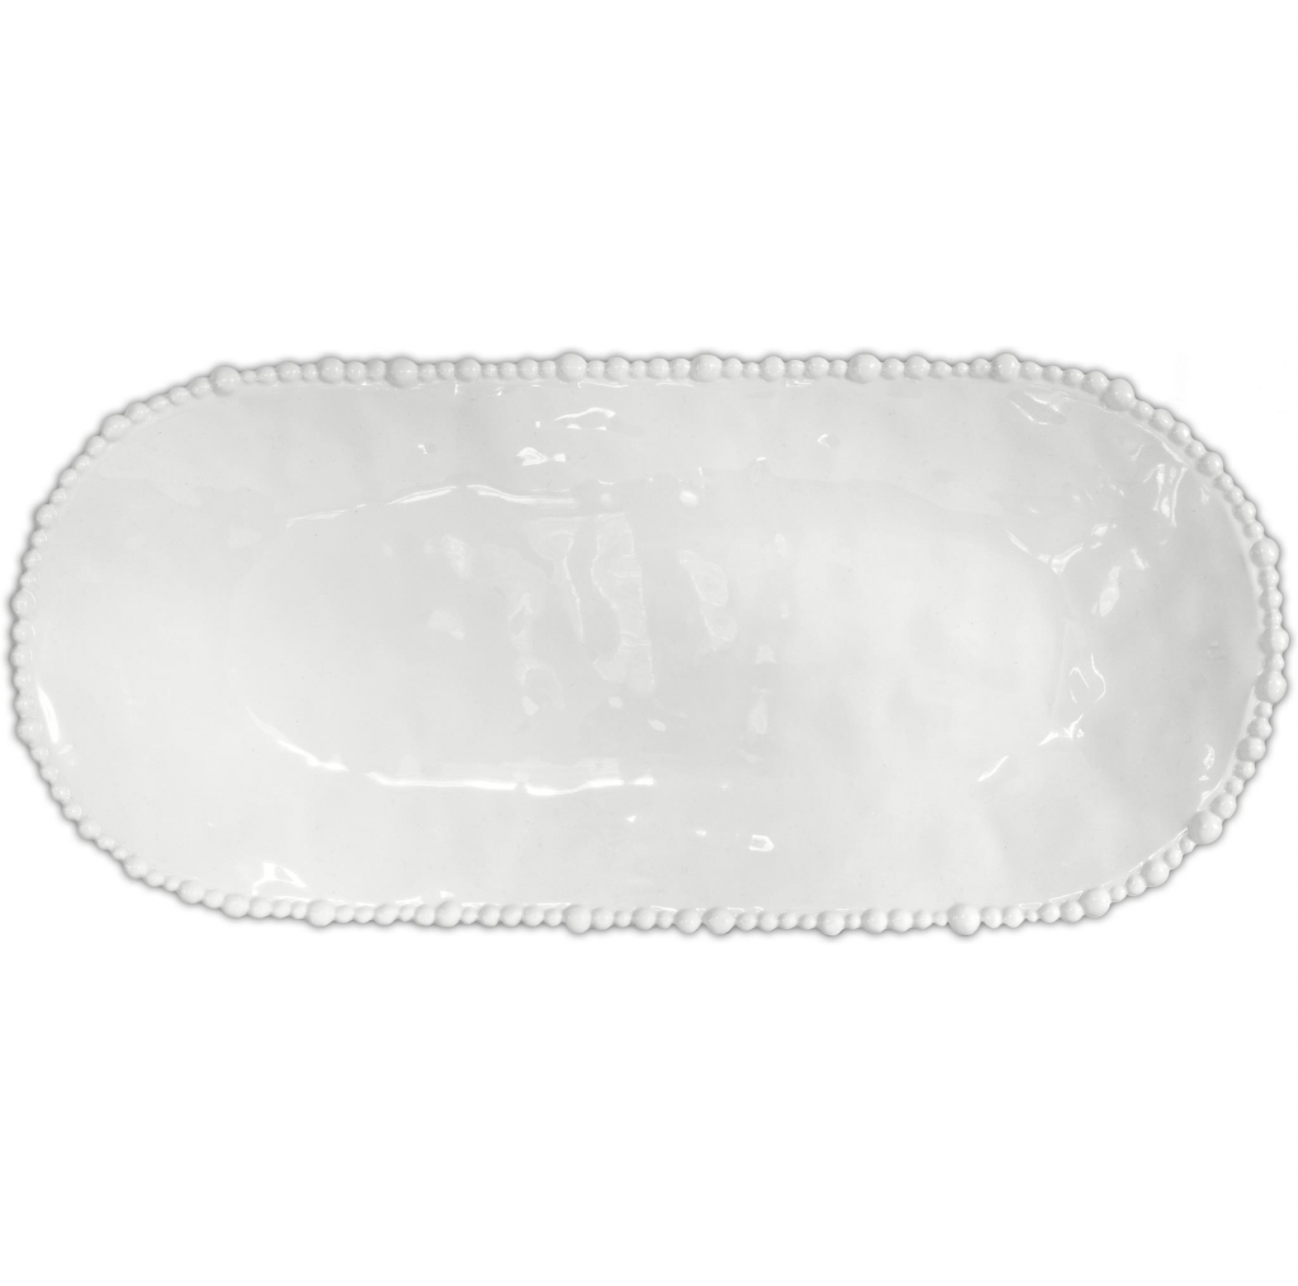 Baci Melamine White Oval Platter 53x24cm